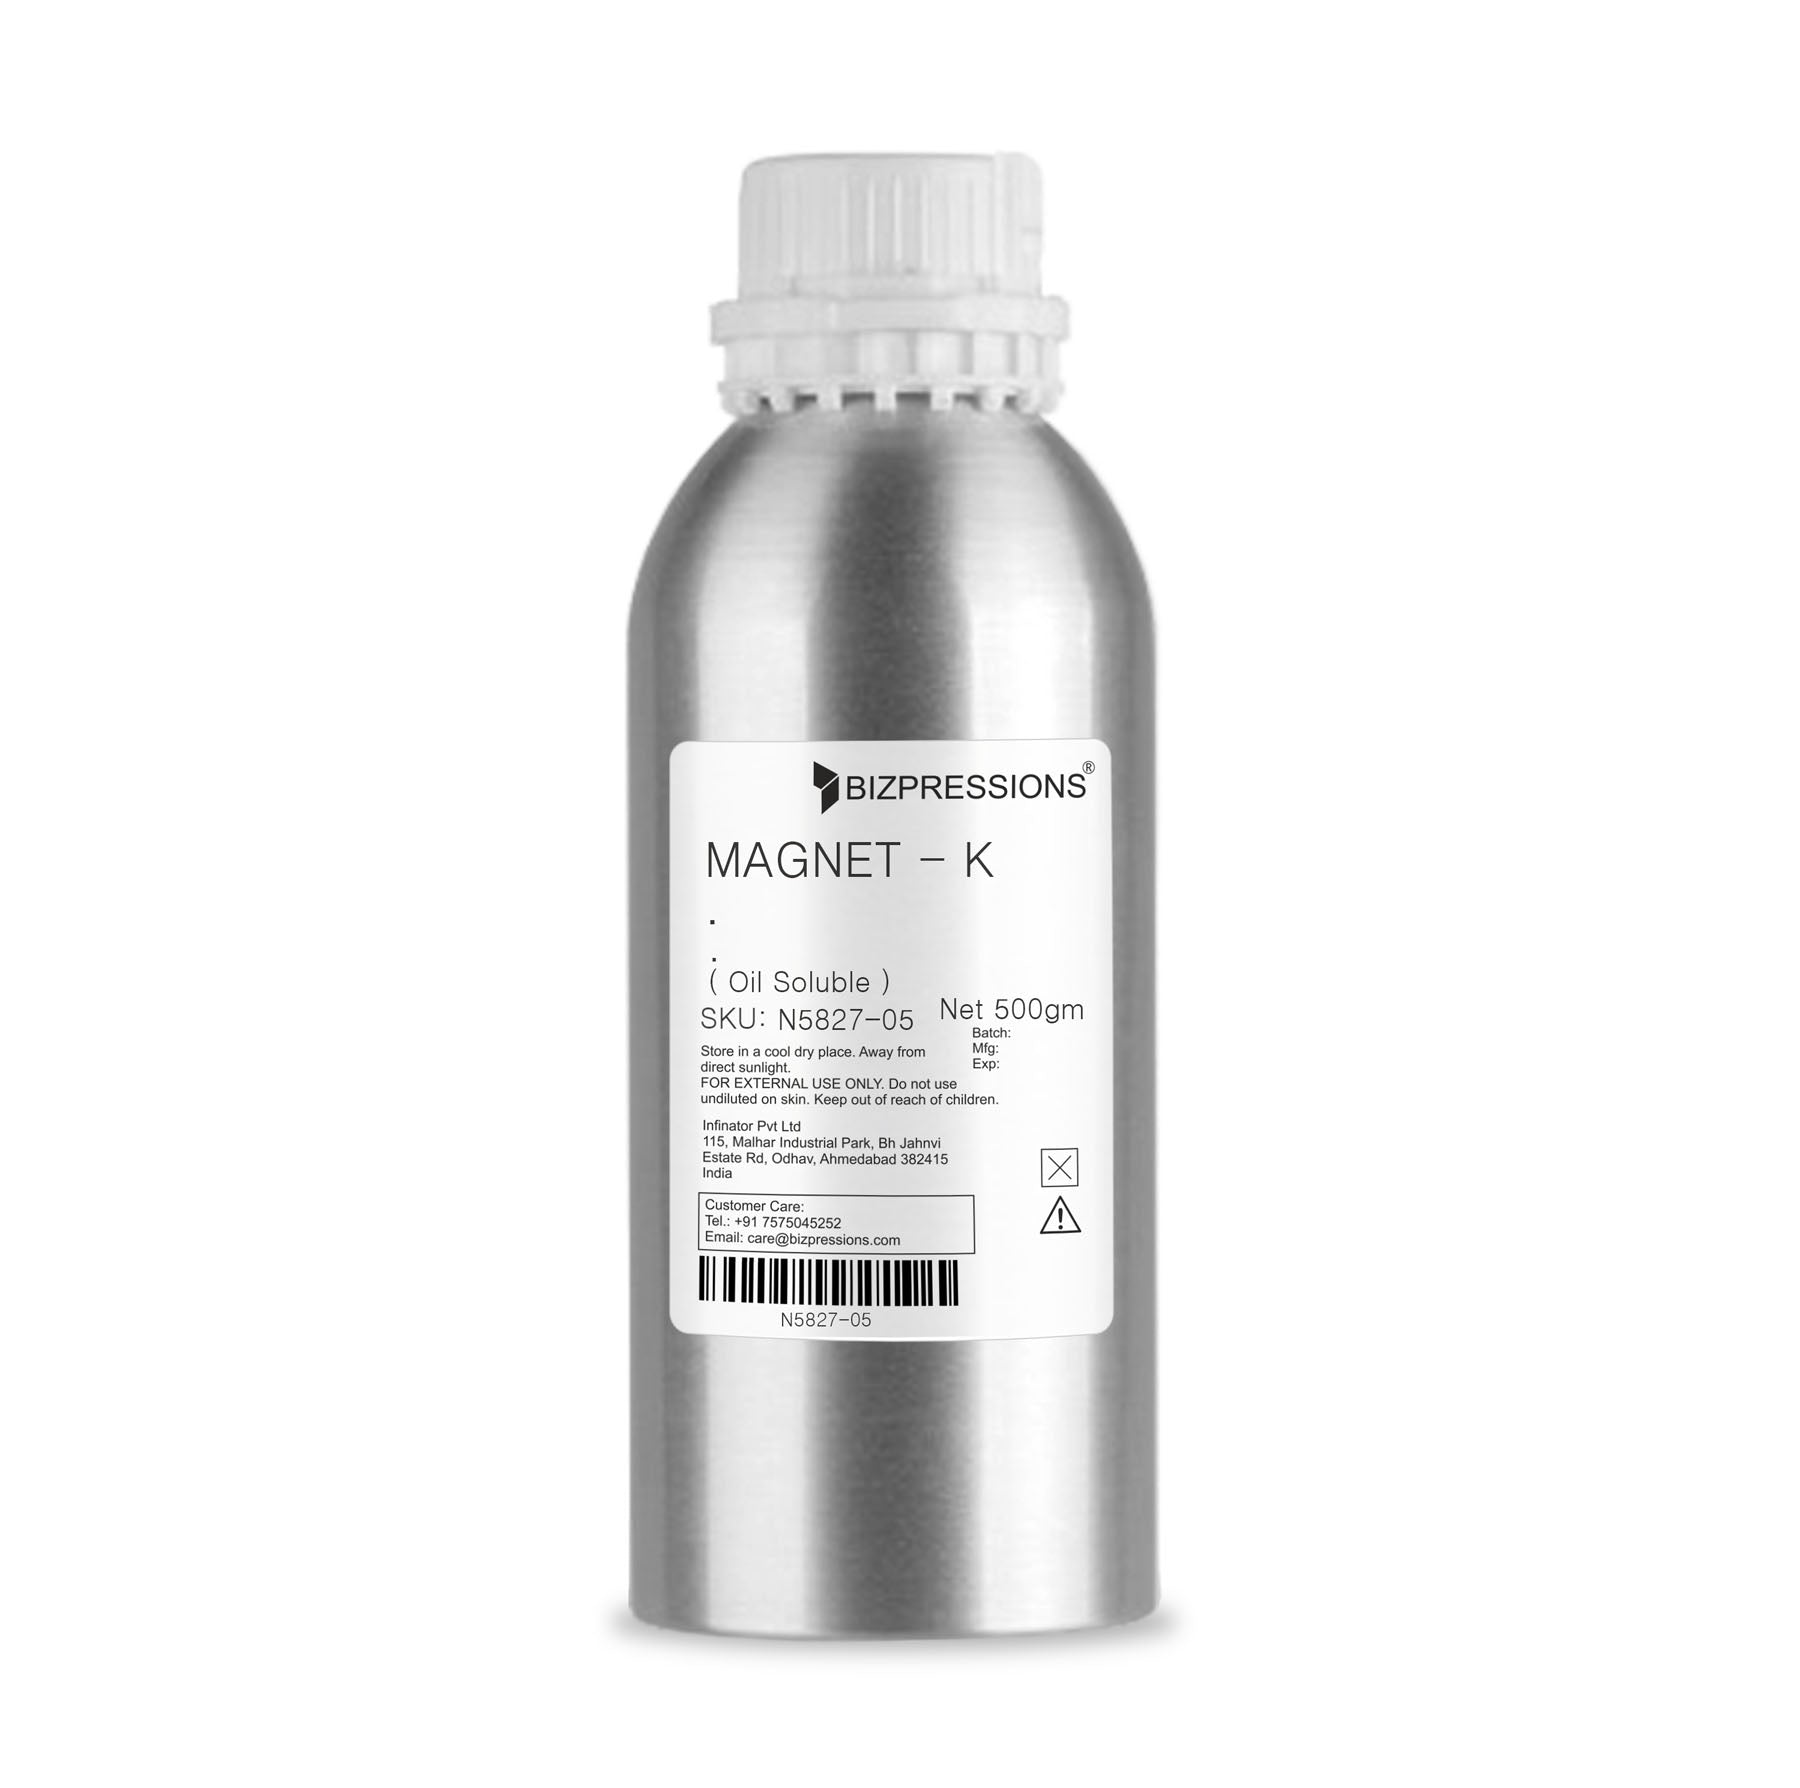 MAGNET - K - Fragrance ( Oil Soluble ) - 500 gm